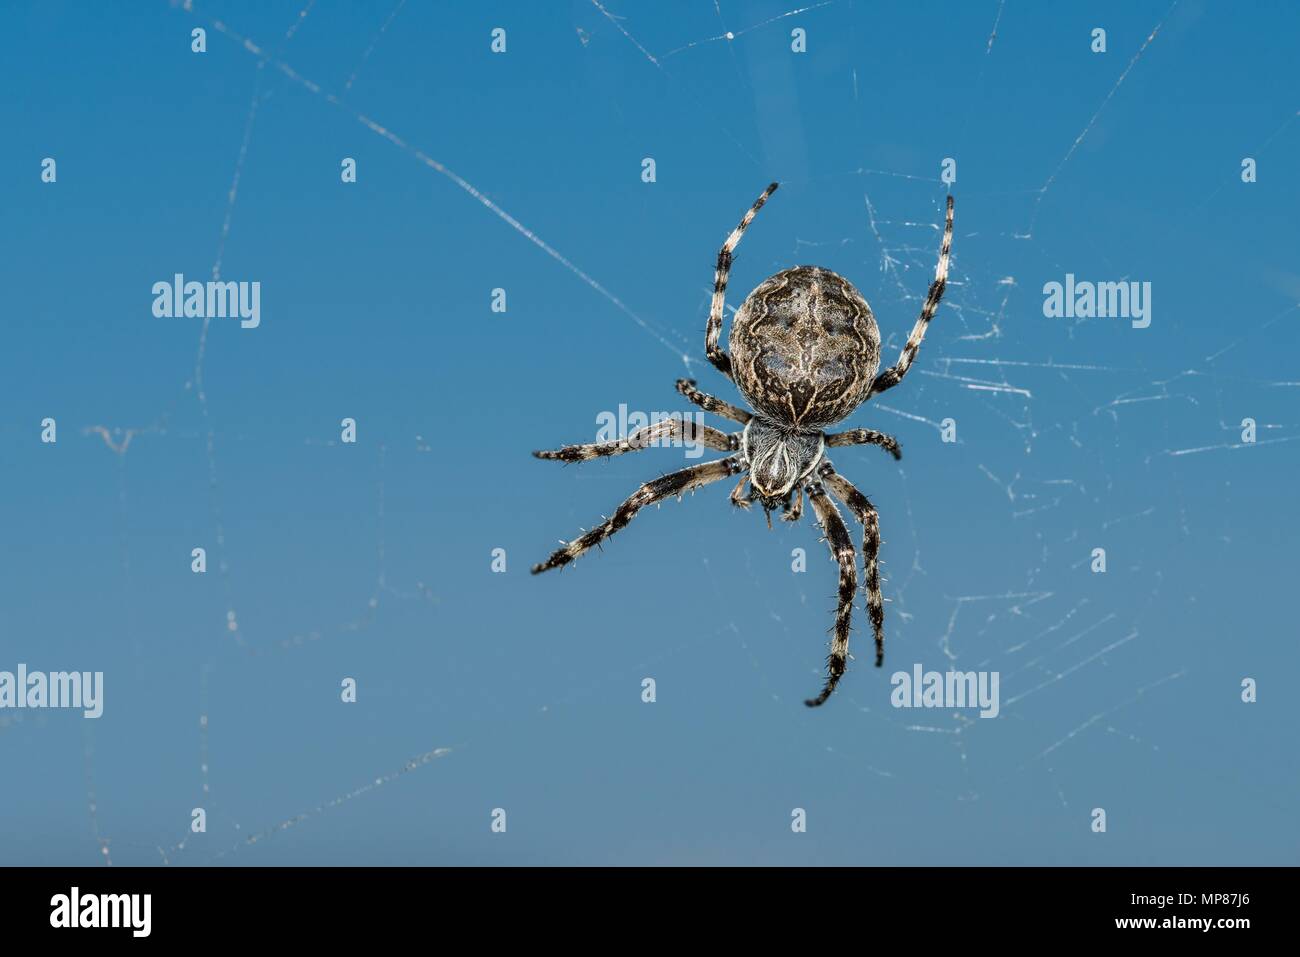 Widerliche Spinne Stockfotos und -bilder Kaufen - Alamy